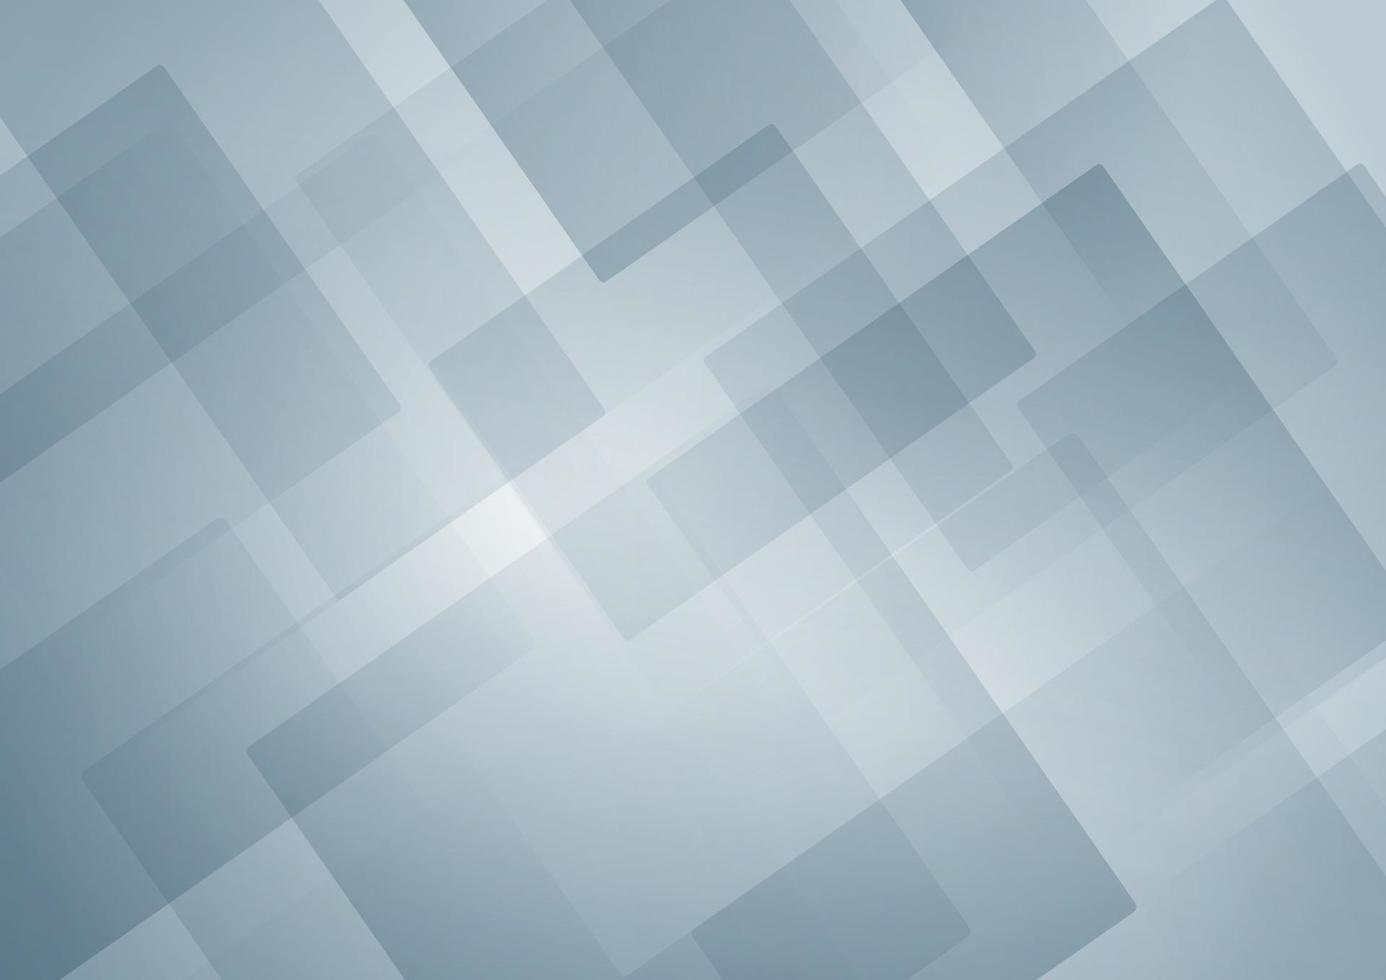 abstracte witte en blauwe geometrische vierkante vorm overlappende achtergrond vector